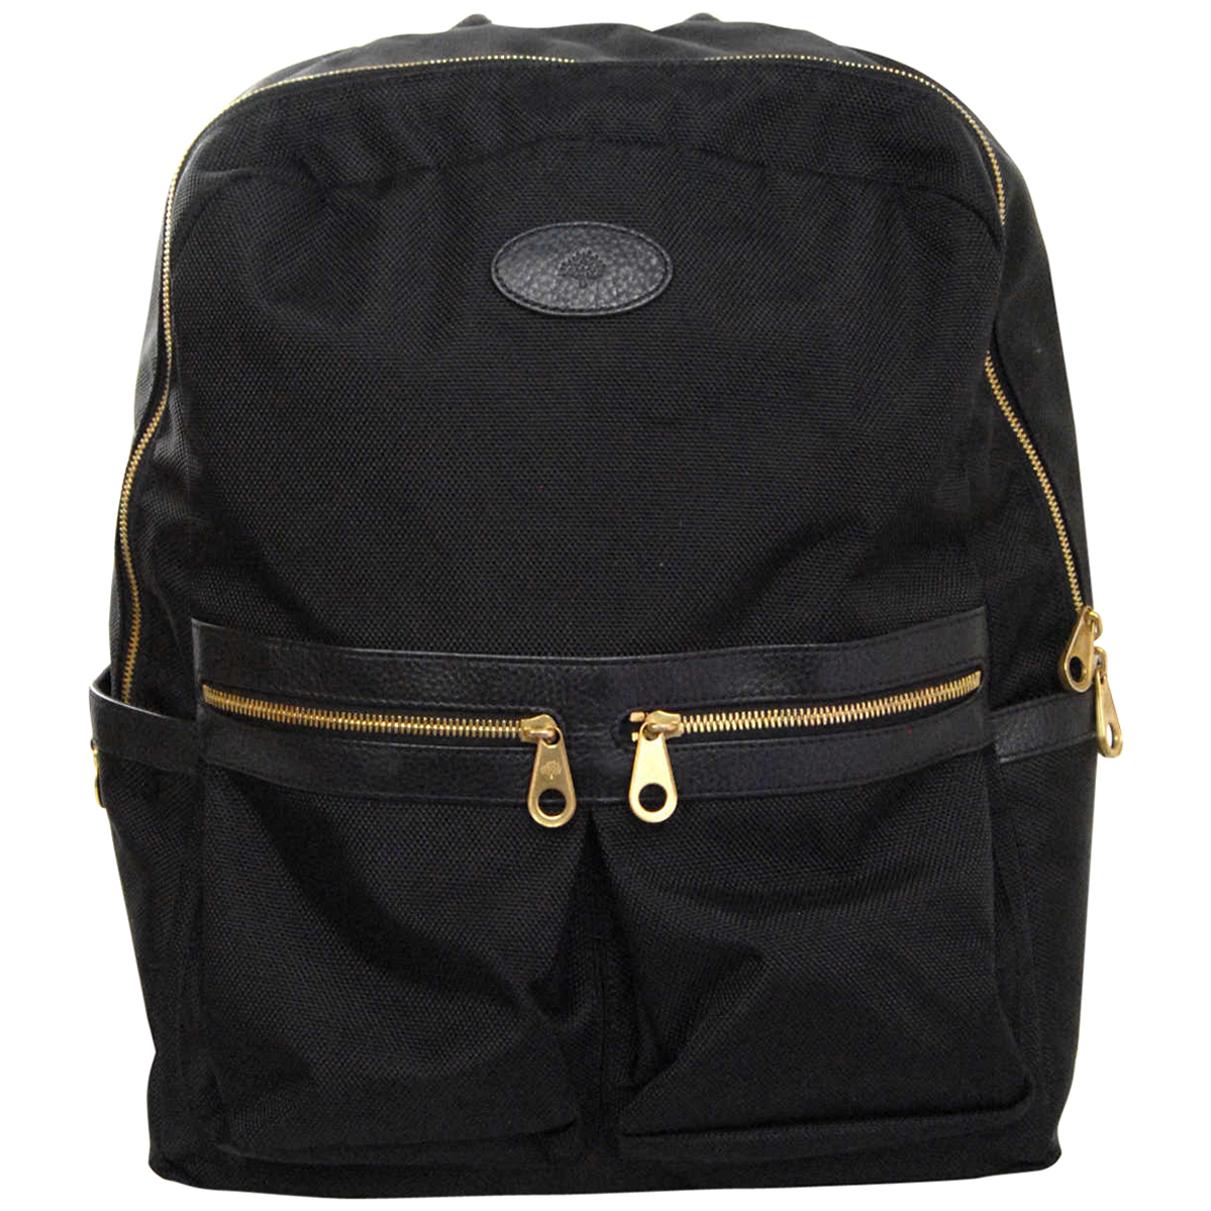 Mulberry Black Textured Nylon Henry Backpack Bag rt. $780